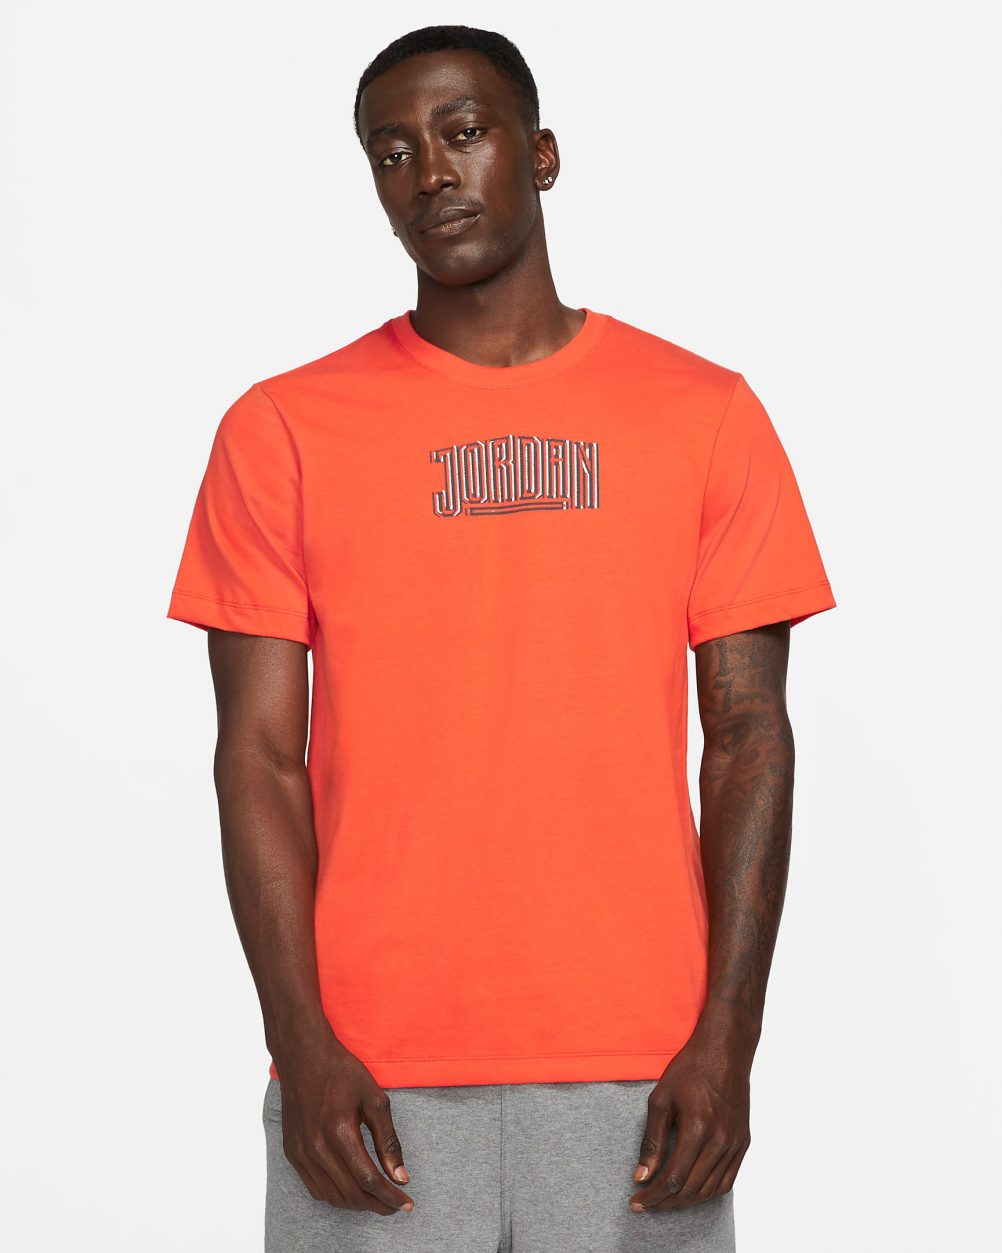 Jordan Orange Shirts Clothing Outfits to Match Air Jordans